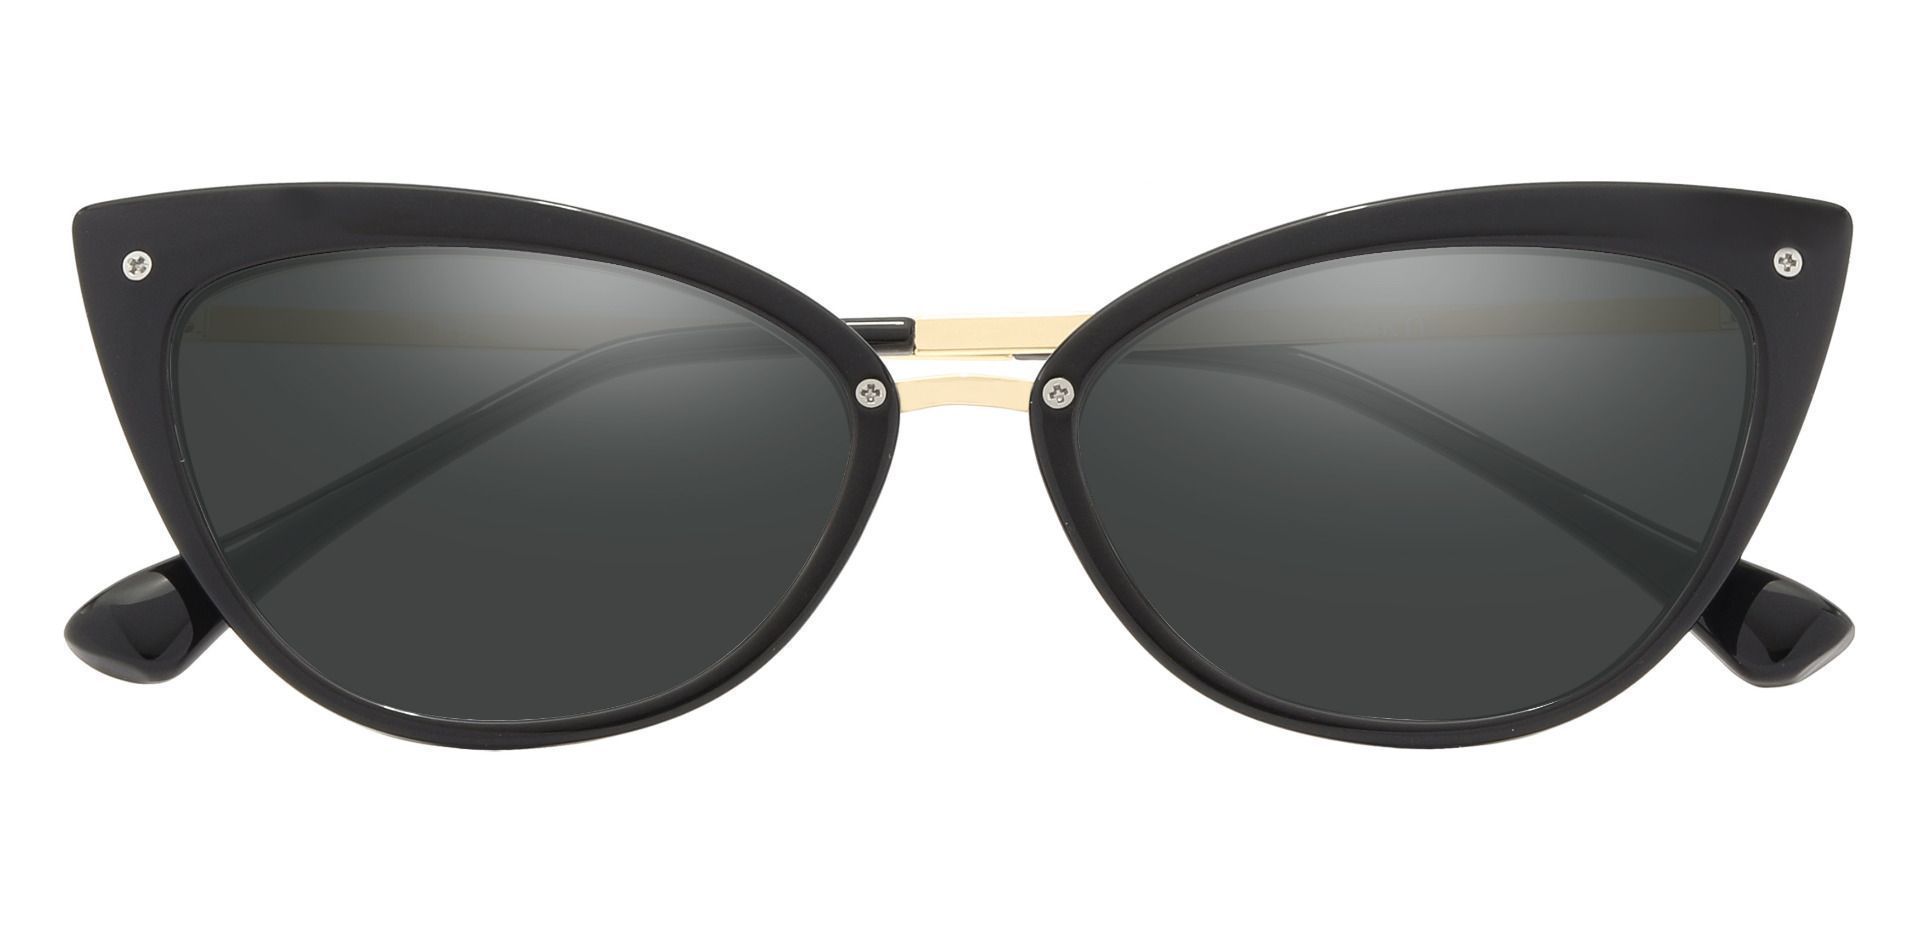 Glenda Cat Eye Prescription Sunglasses - Black Frame With Gray Lenses